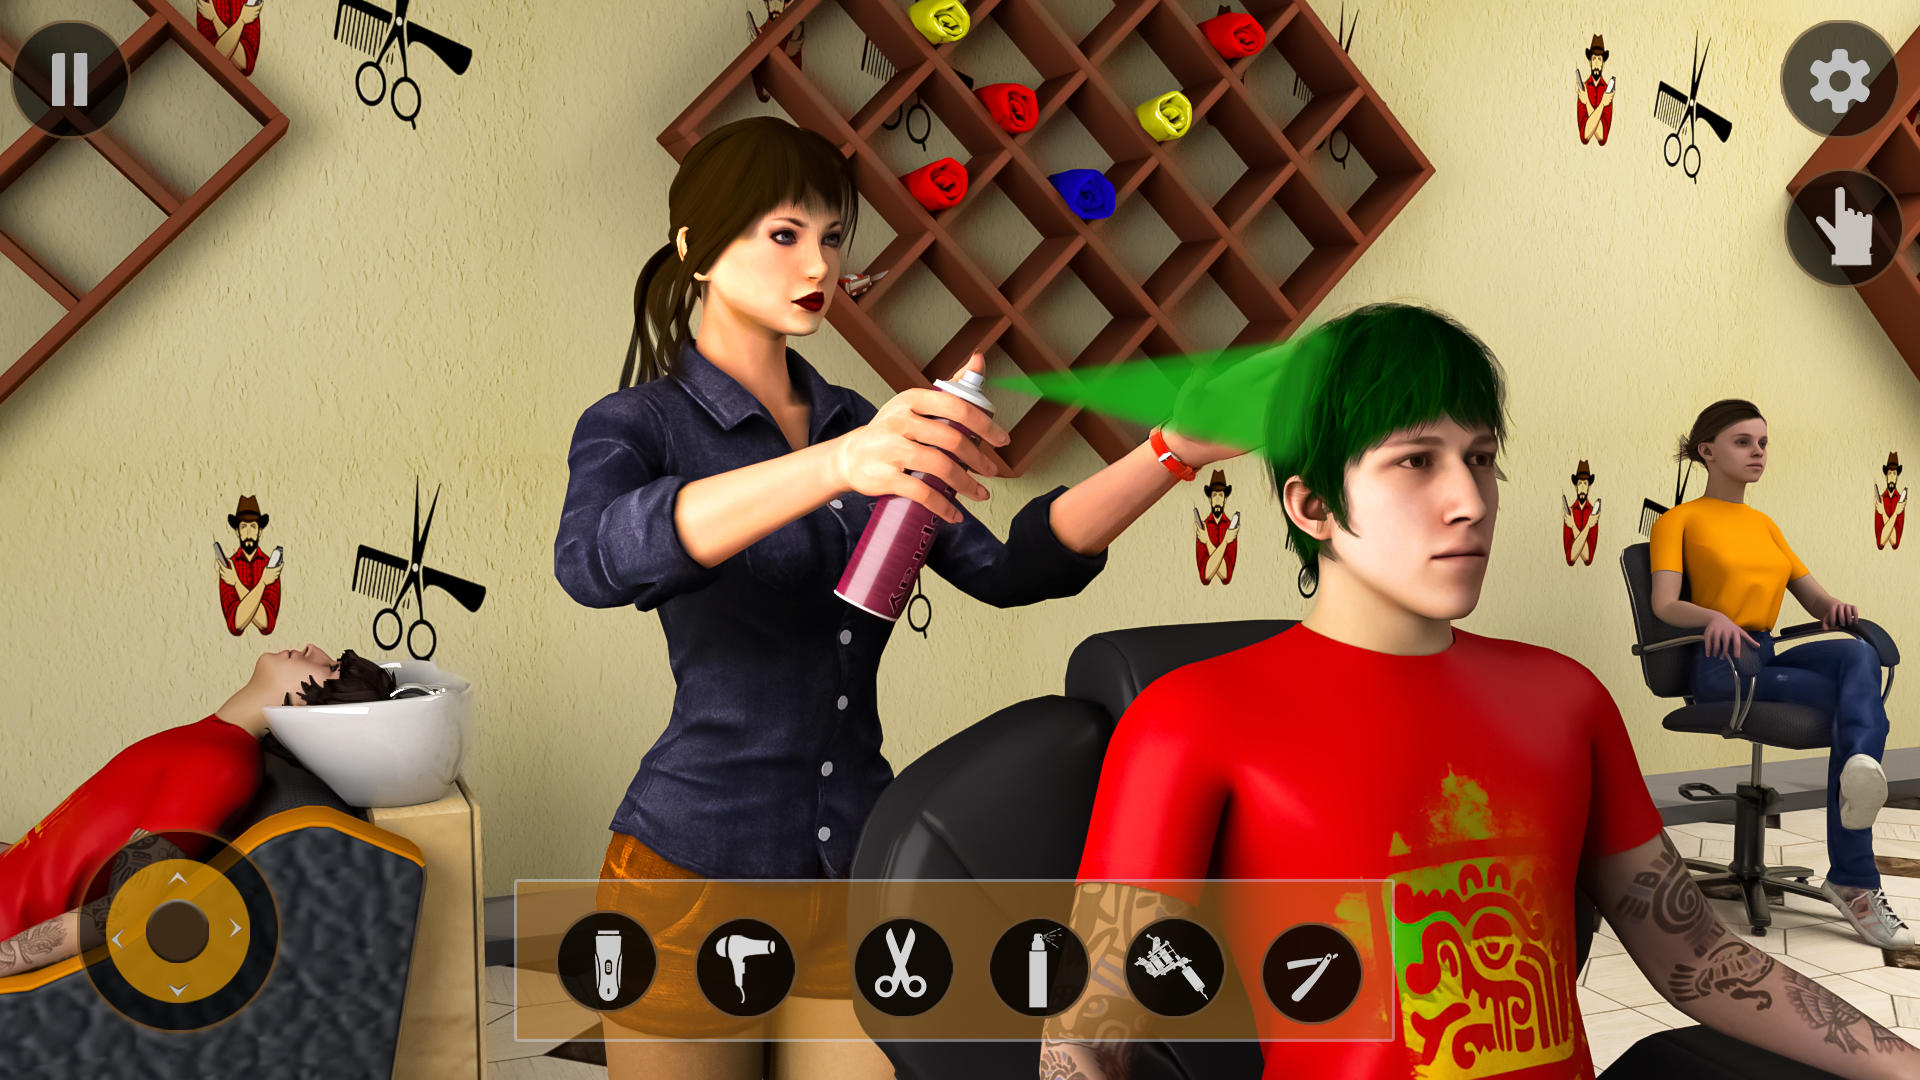 Download Virtual Barber Shop Simulator: Hair Cut Game 2020 android